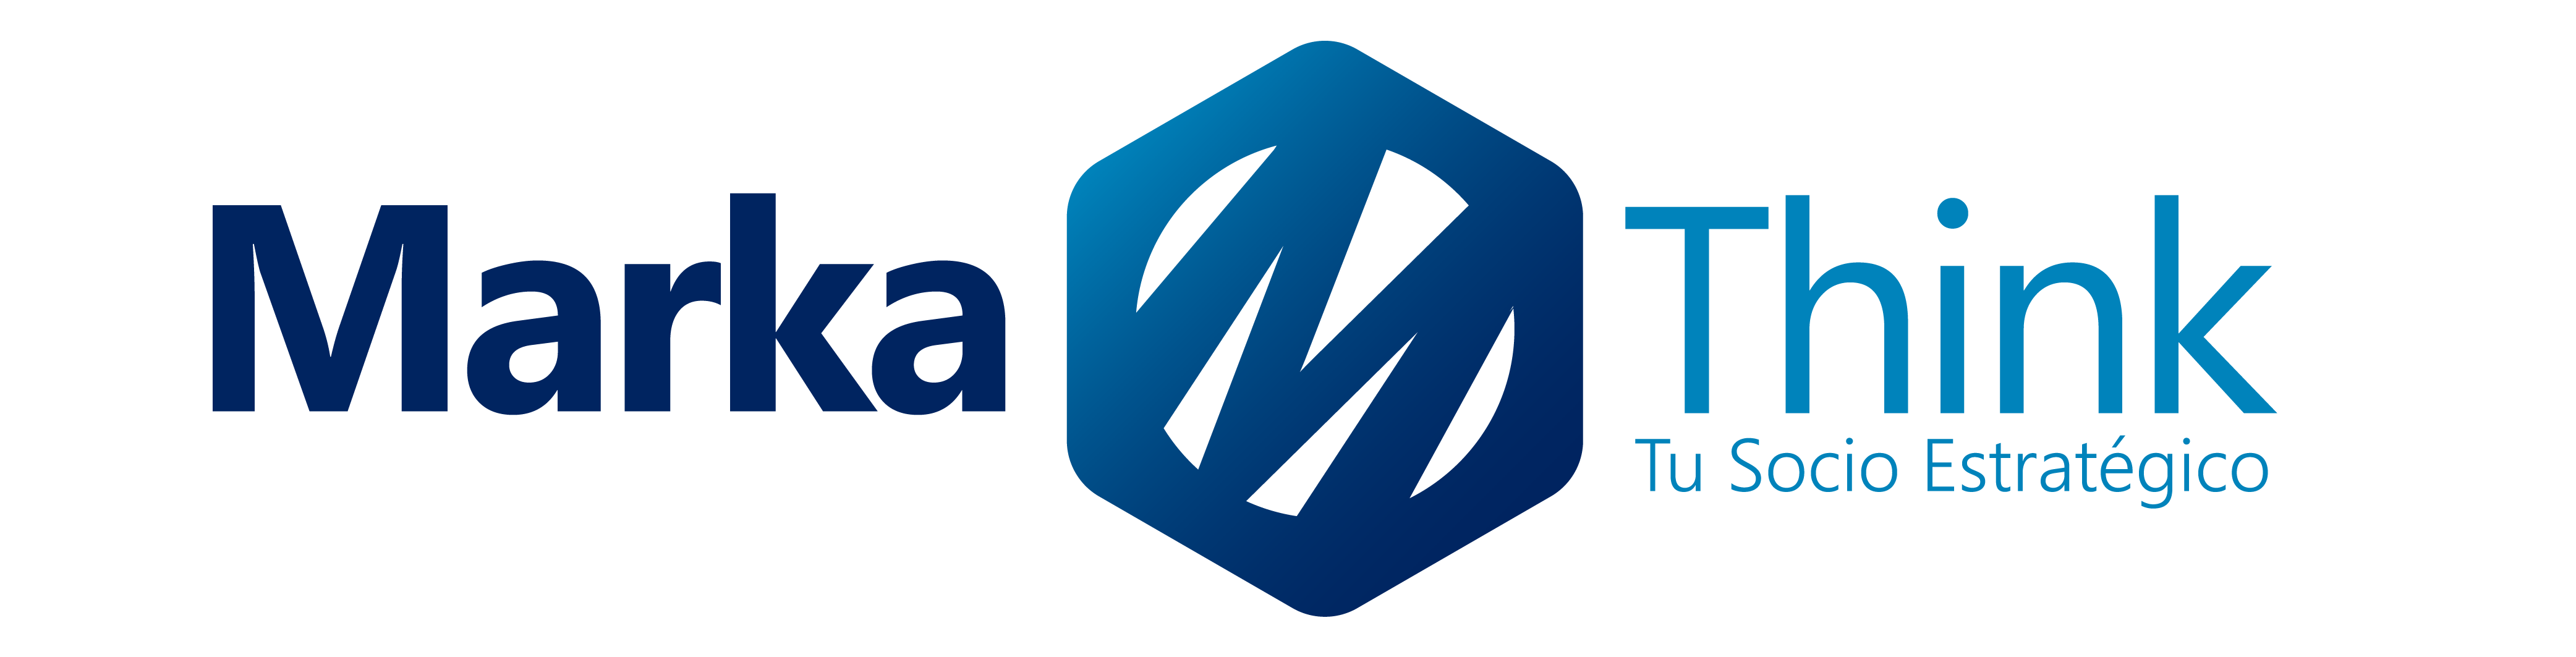 logo-marketing-seo